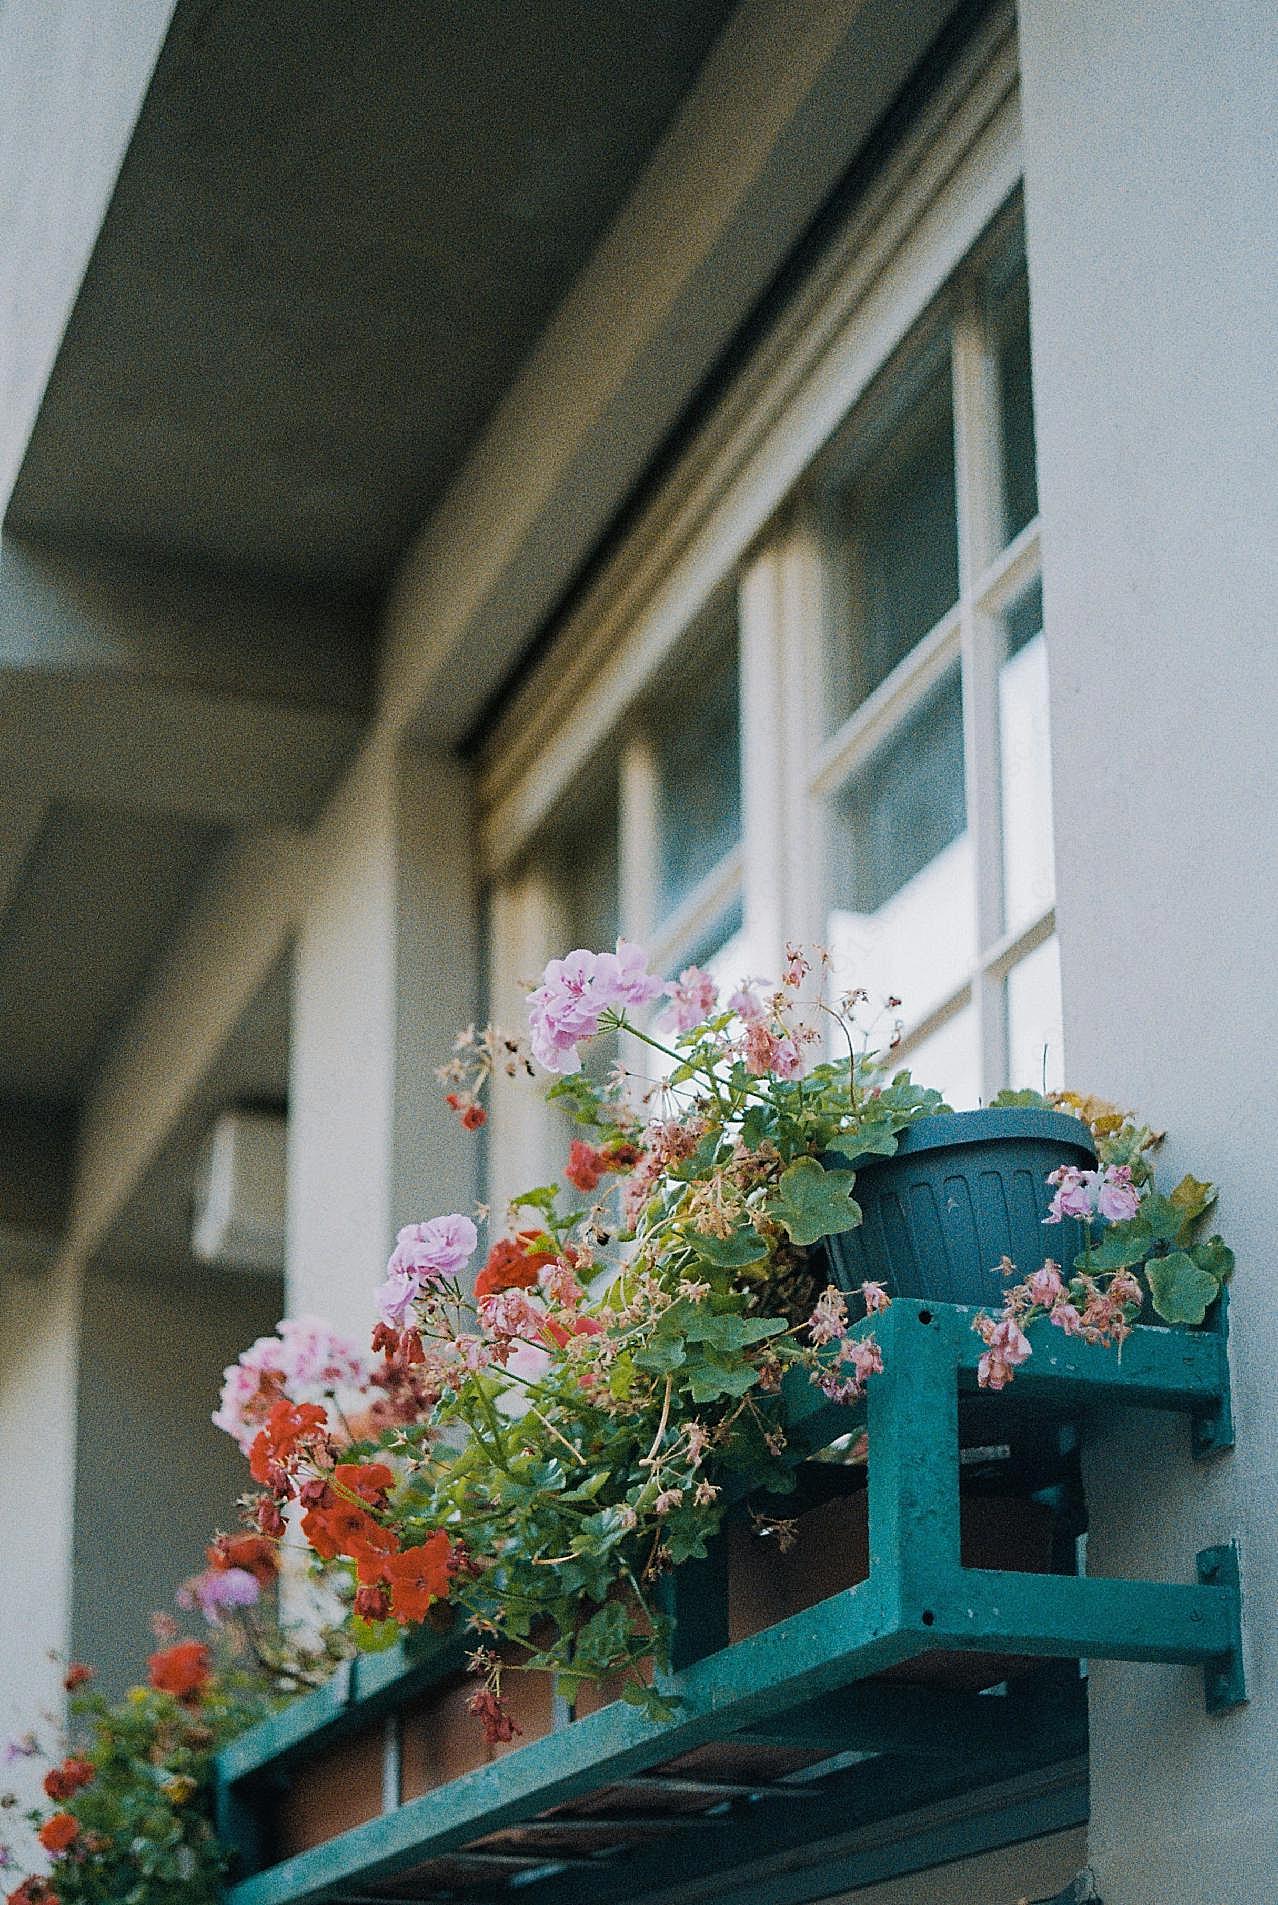 窗台盆栽花植图片欣赏摄影高清